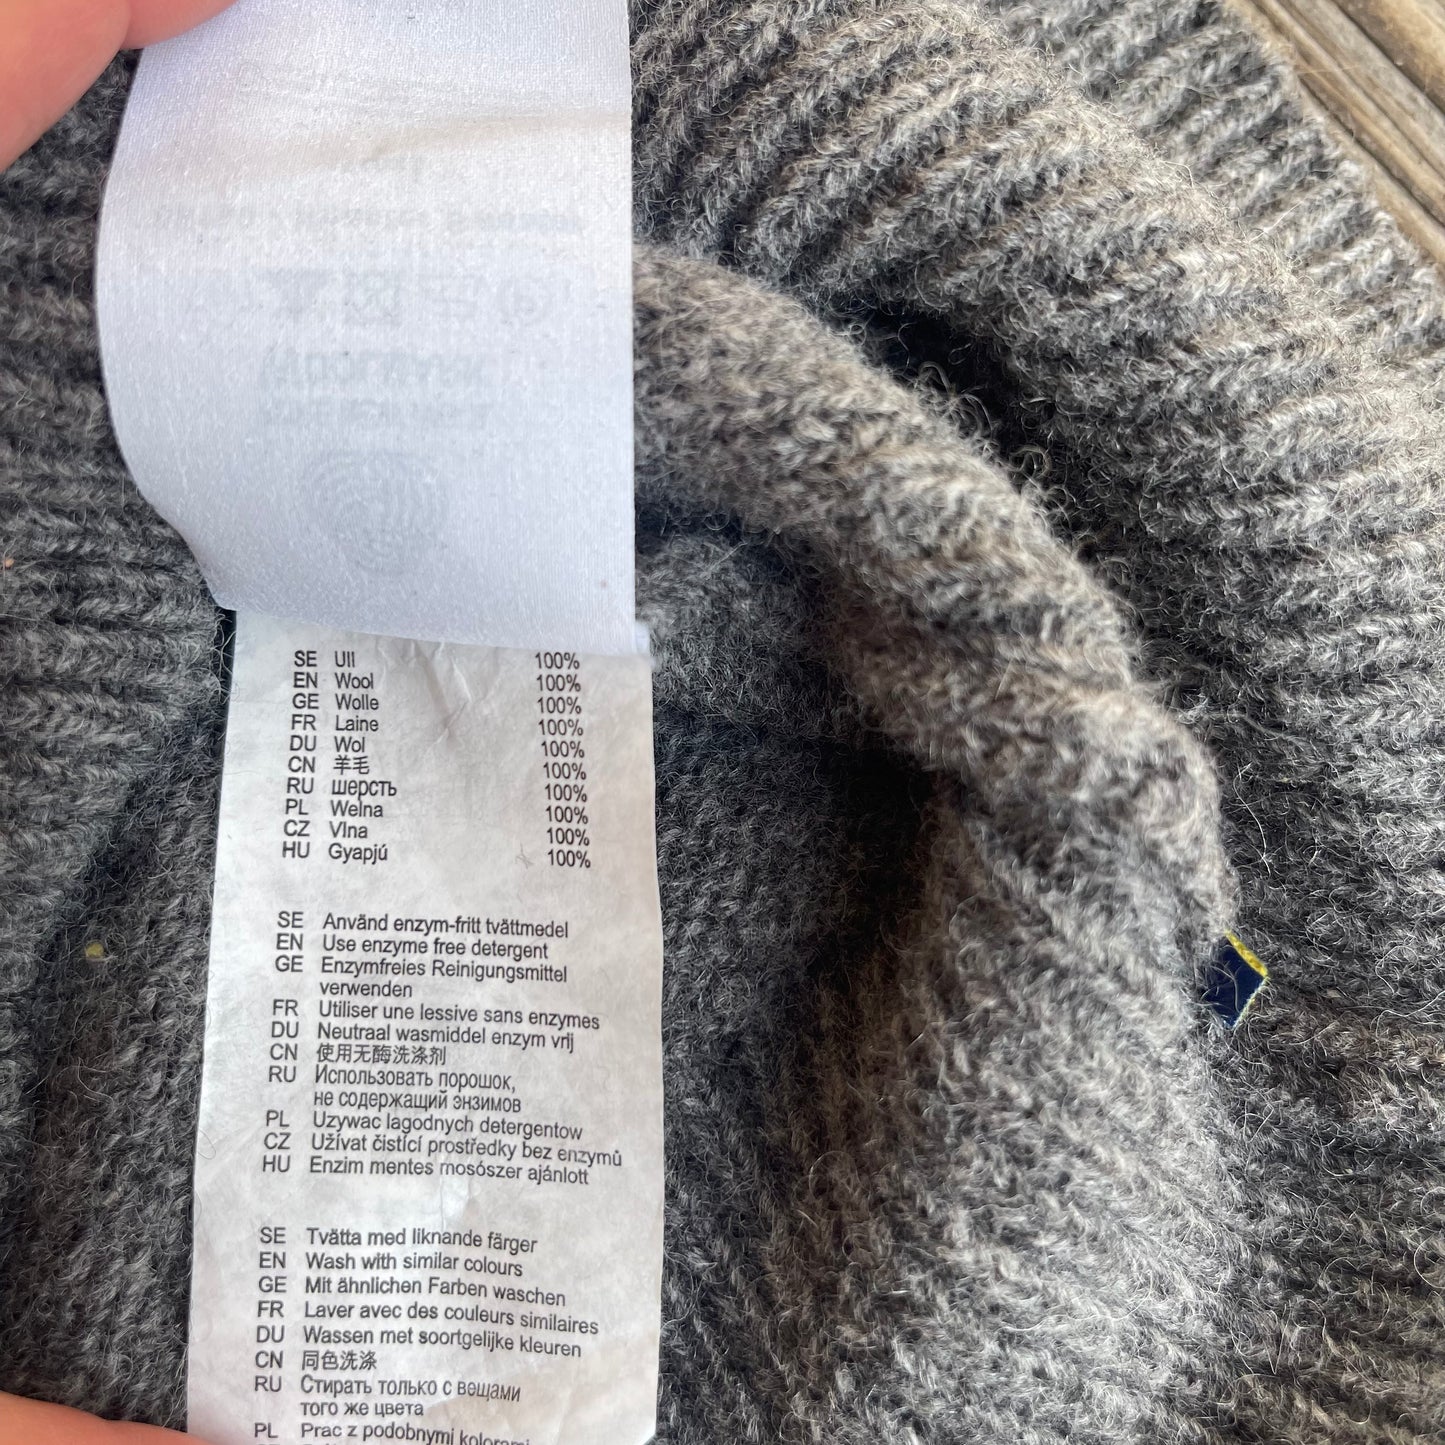 Rollkragen Strick- Pullover Fjällräven Damen M 100% Wolle Sweater grau